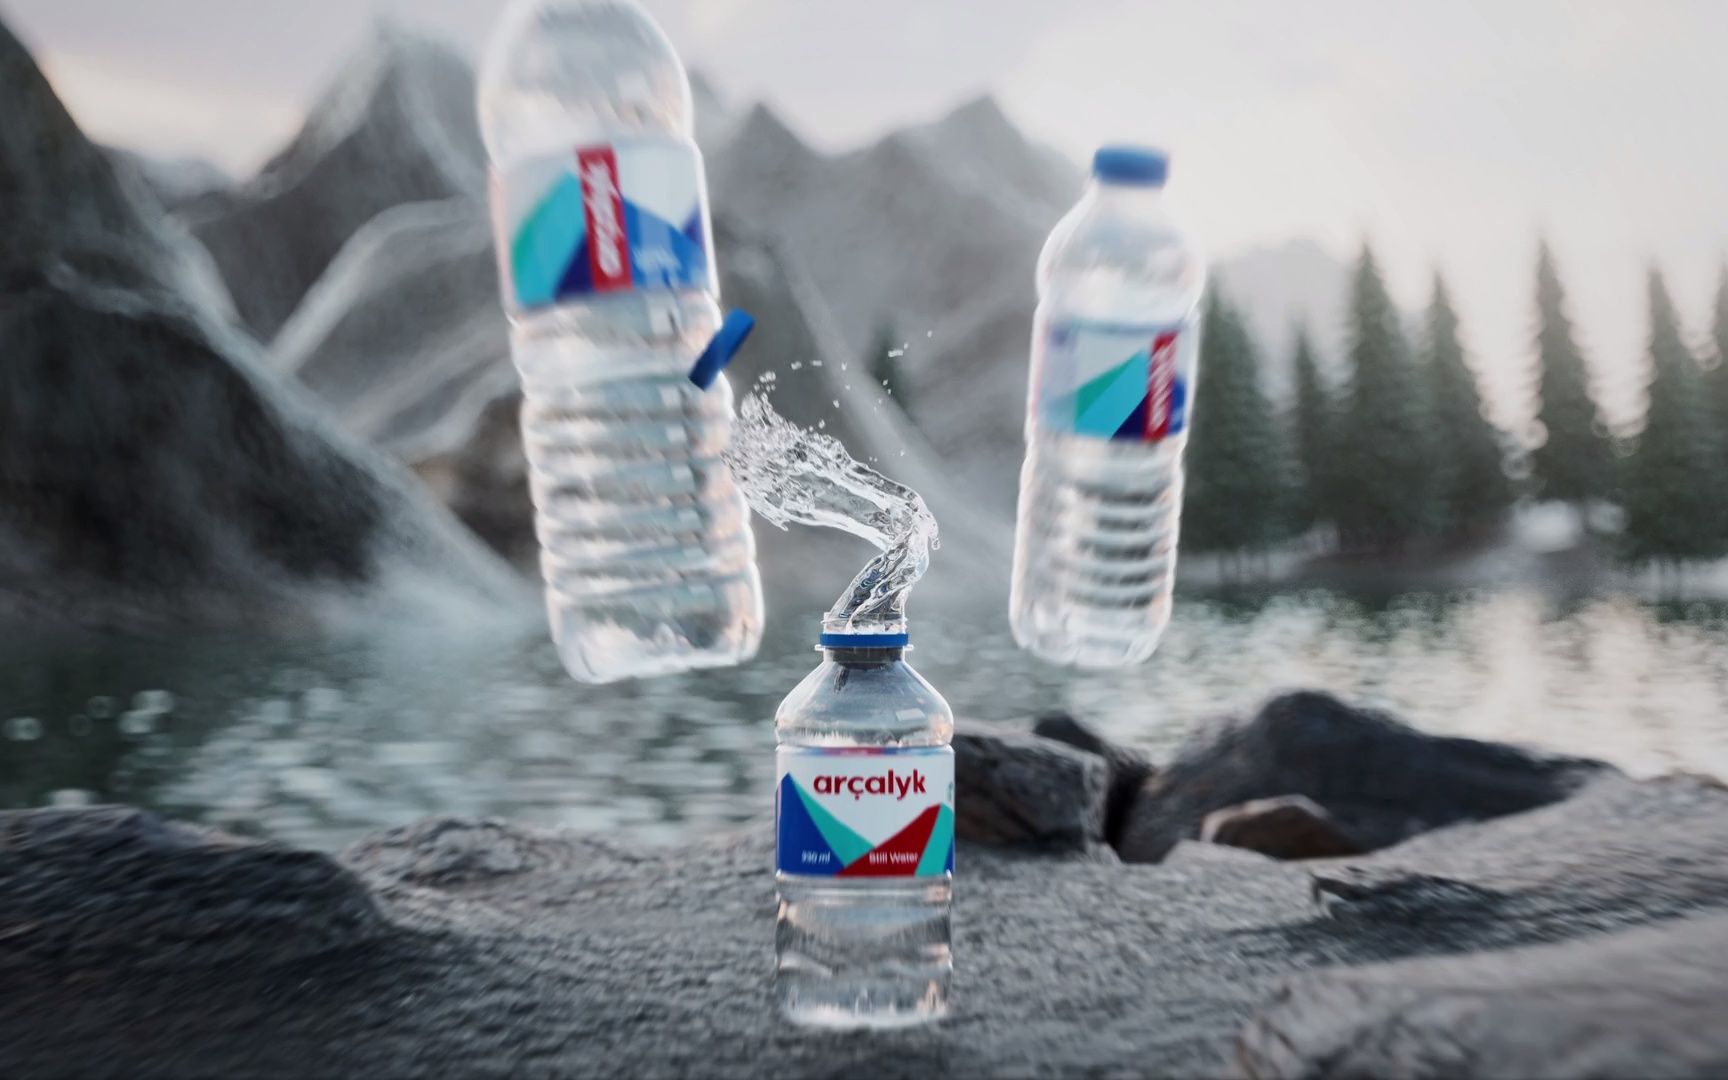 饮用水“Archalyk” 广告CG视频效果